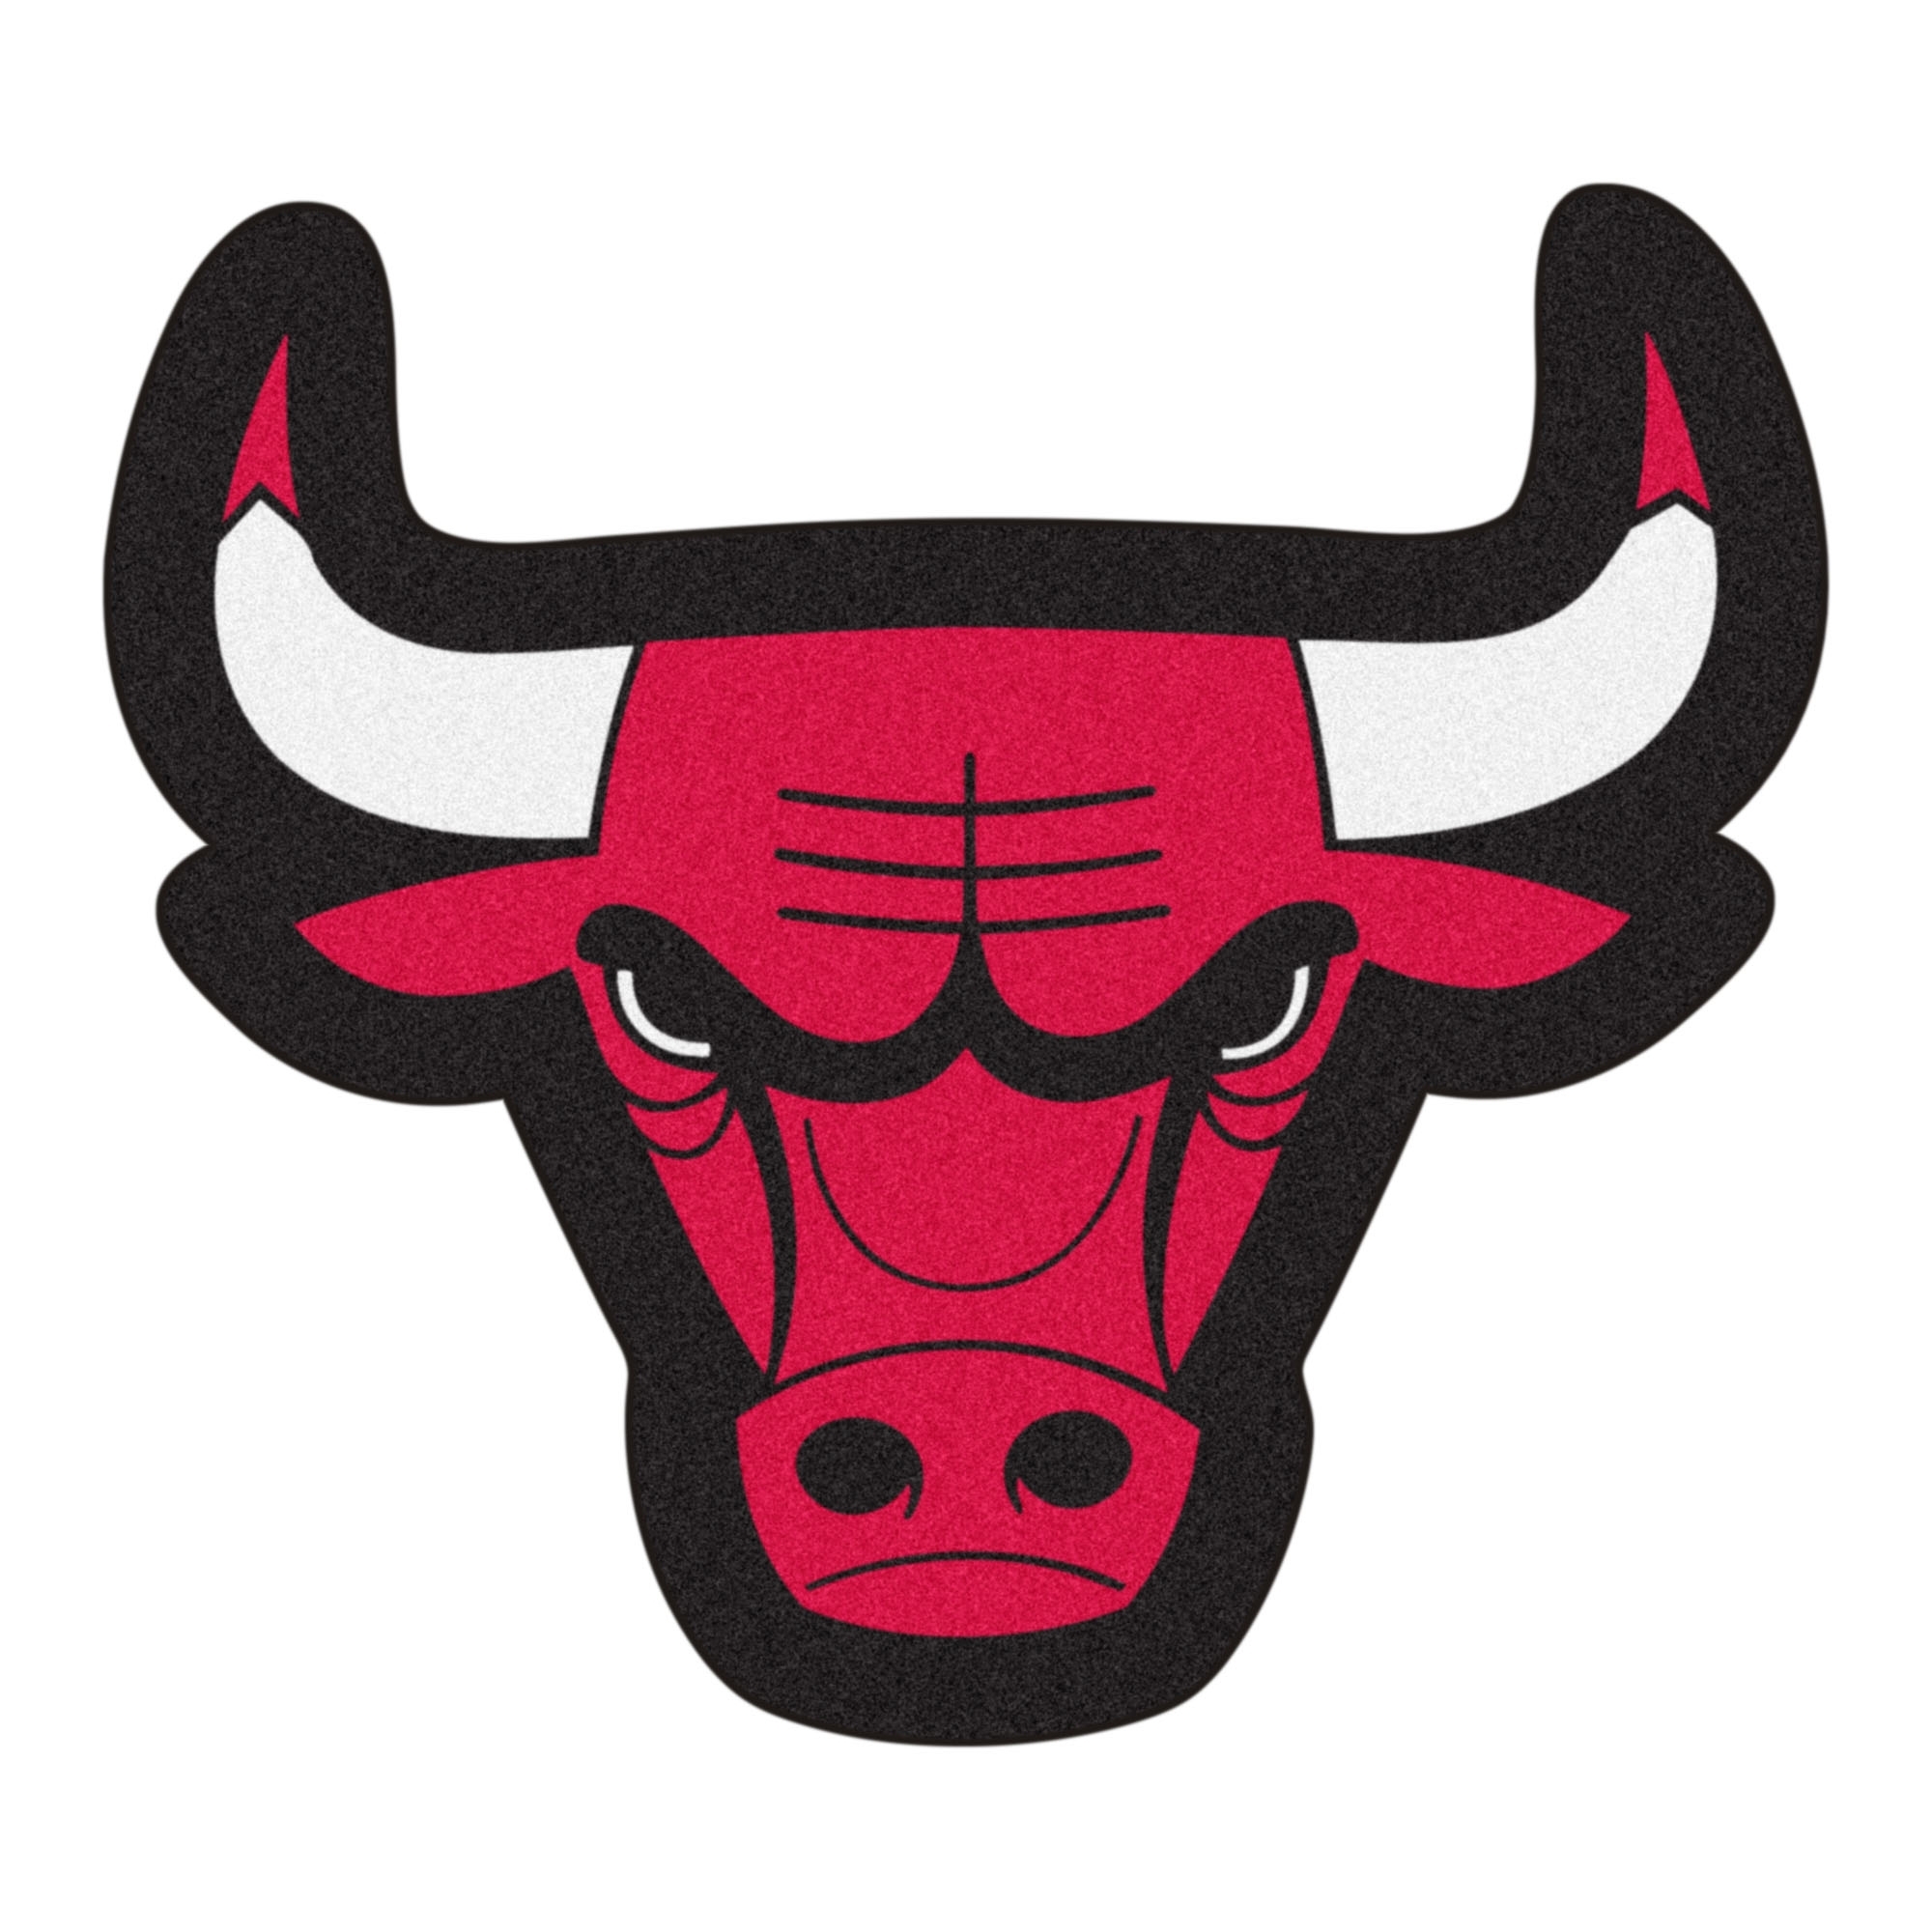 Б г бык. Чикаго Булс. Бык Чикаго Буллз. Знак Чикаго Буллз. Красный бык Chicago bulls.